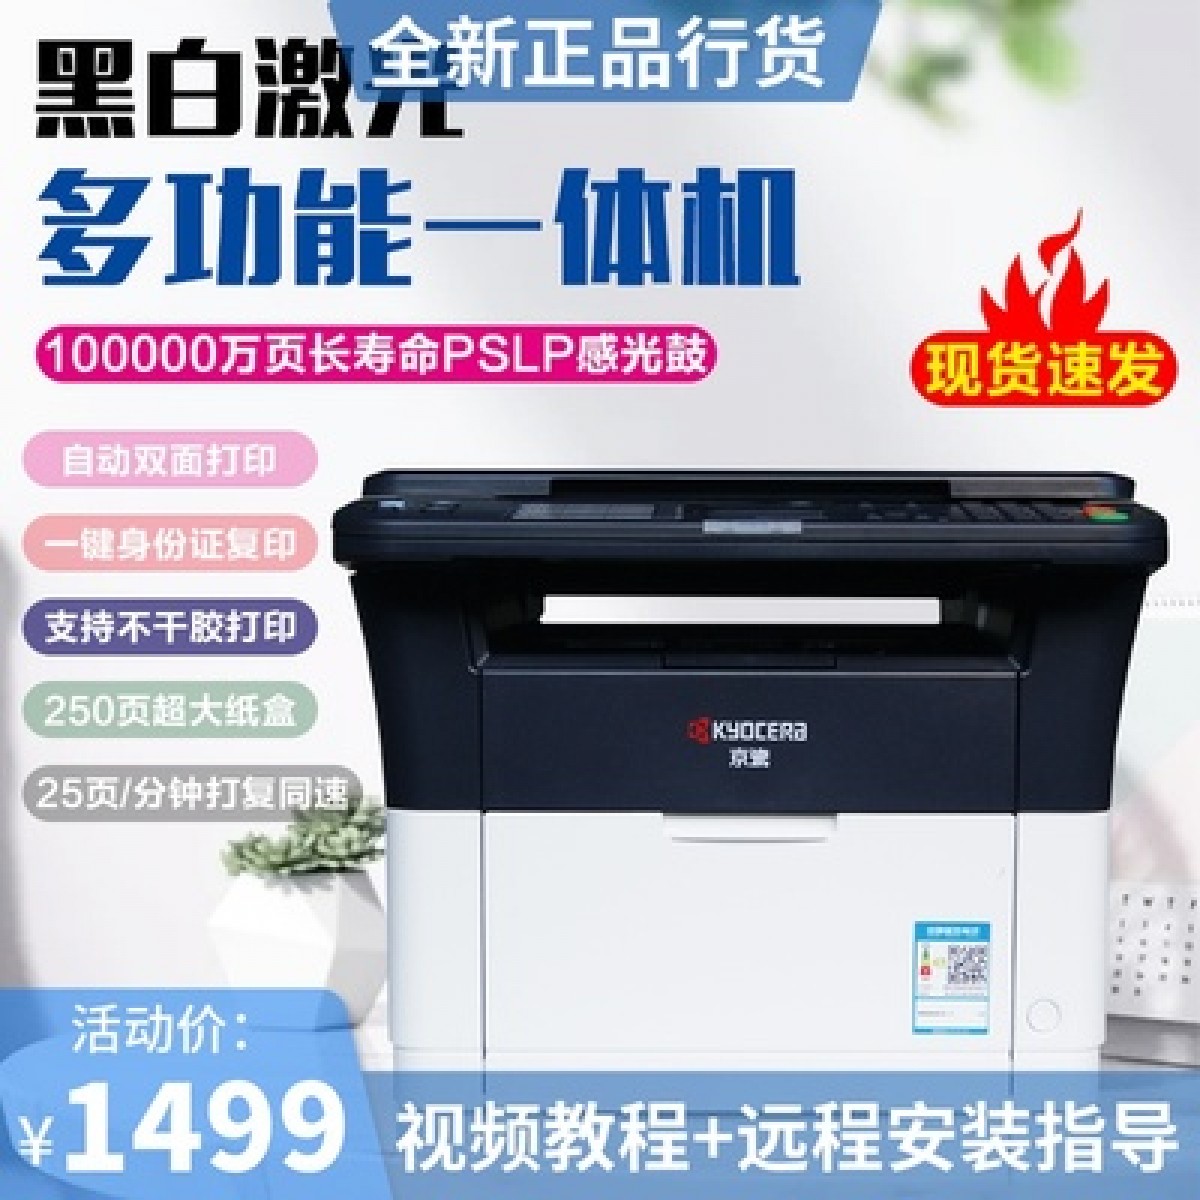 京瓷FS-1020MFP/1025DPN打印复印扫描黑白激光多功能一体机不干胶